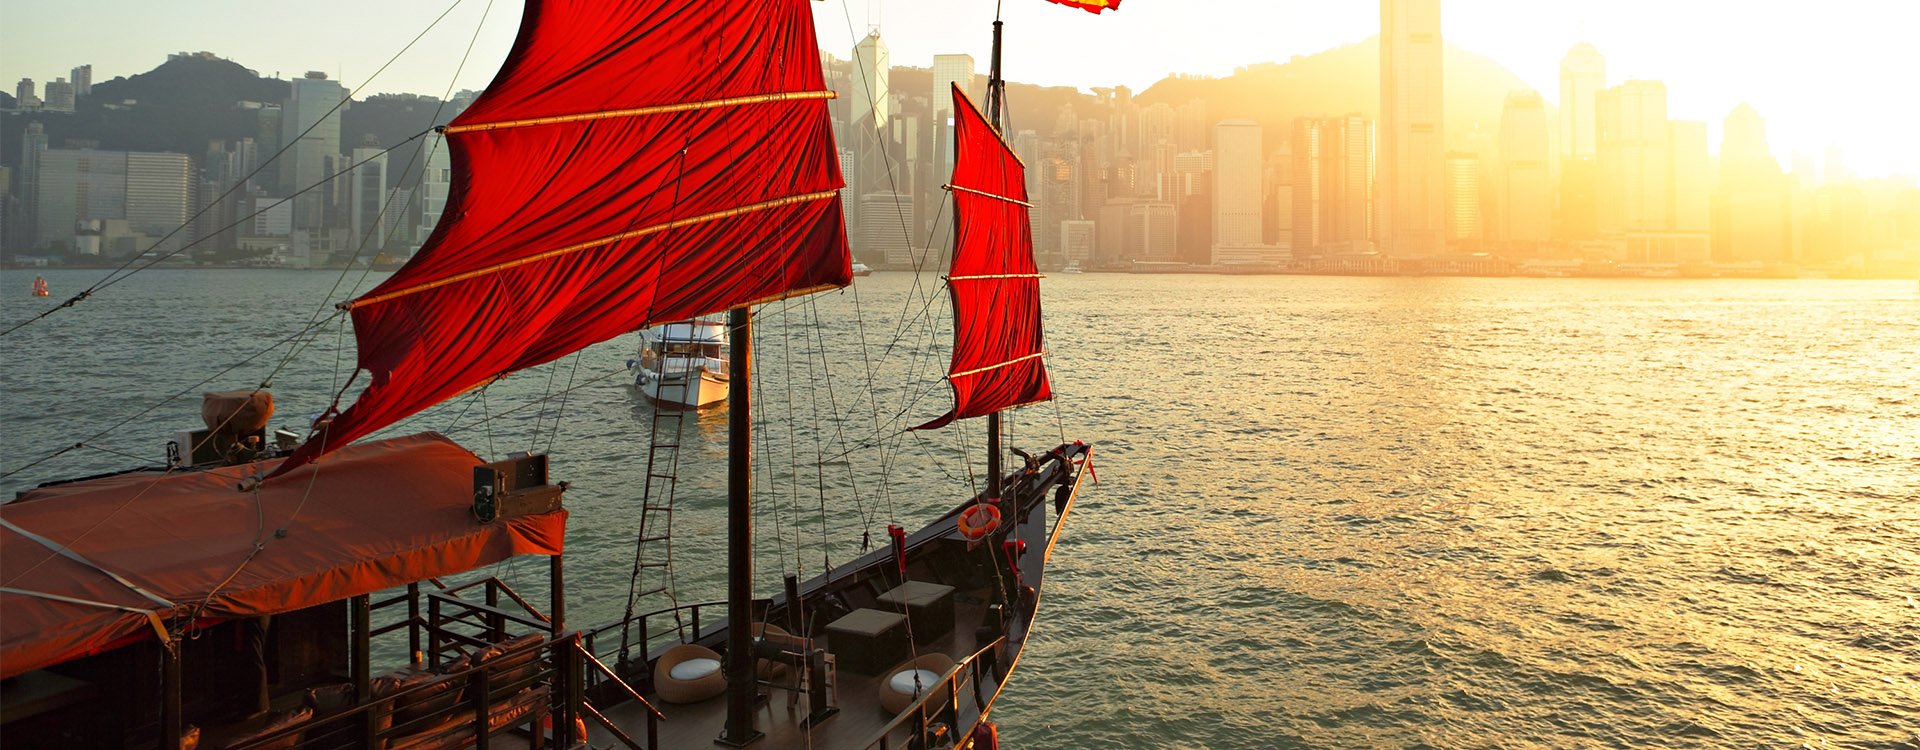 china-hong-kong-sailboat